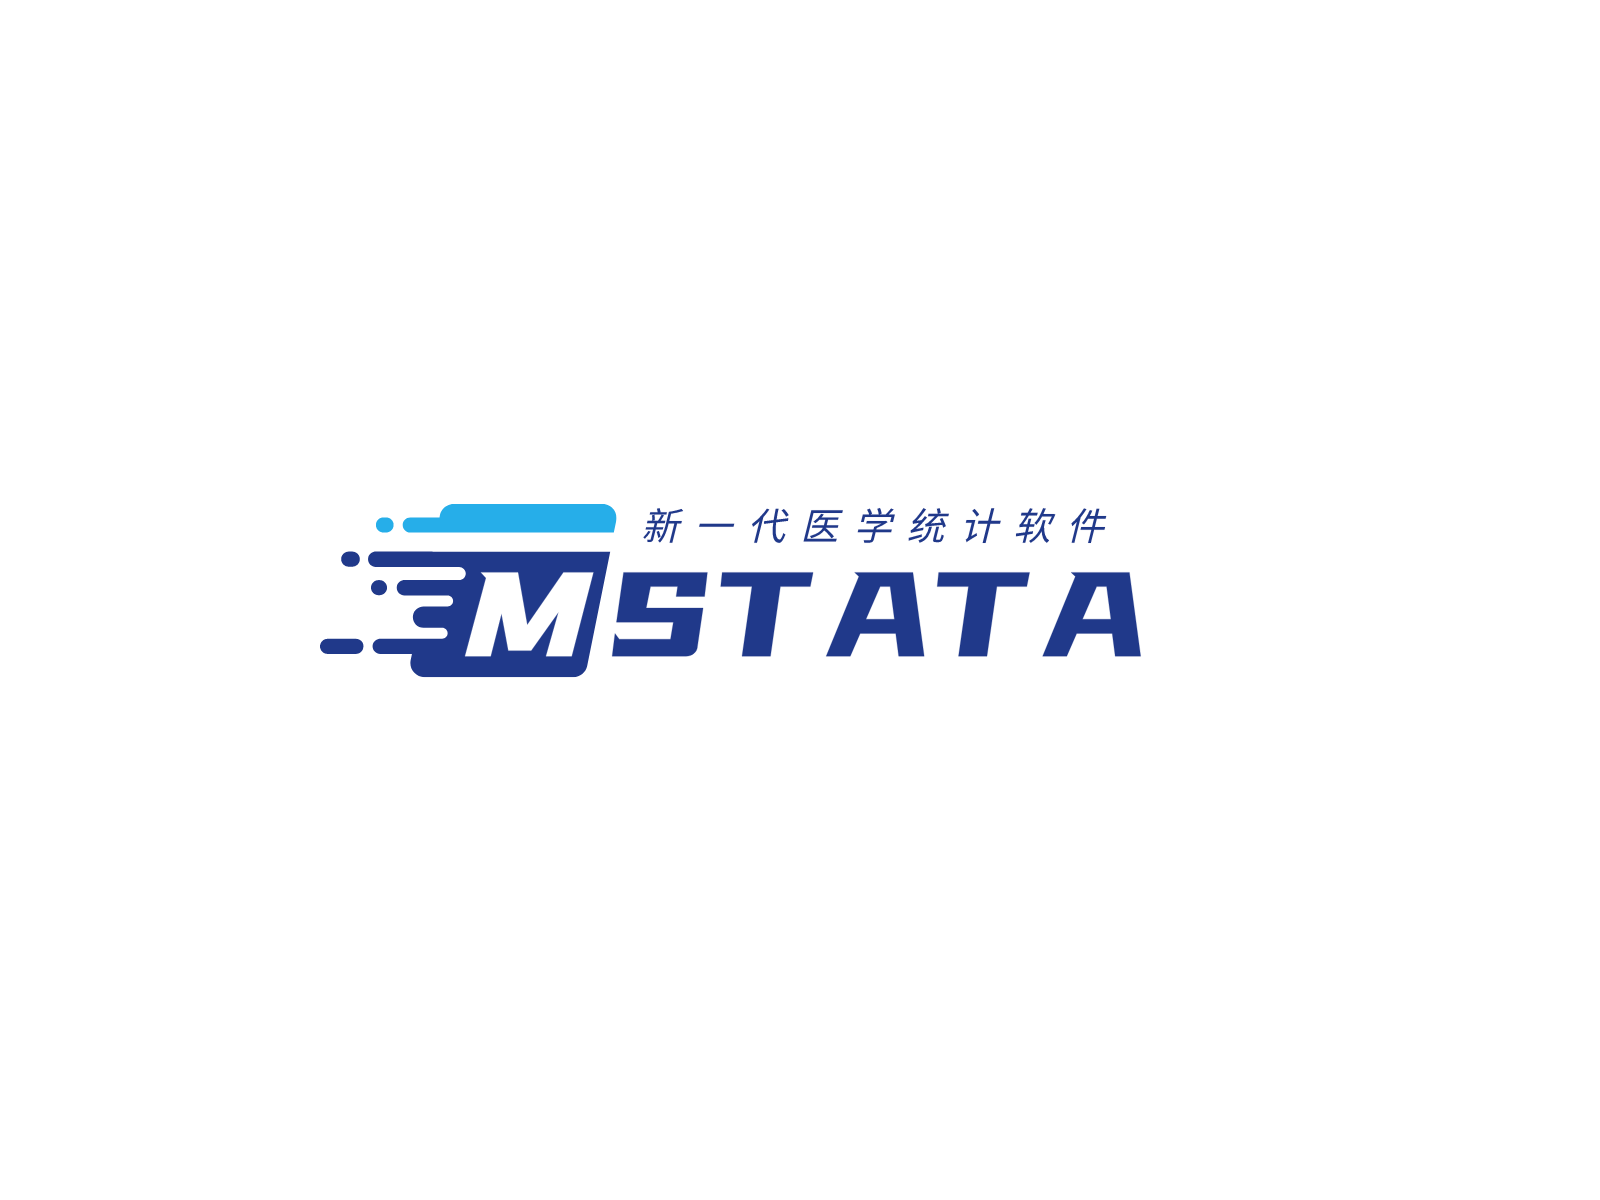 Mstata 医学统计机器人